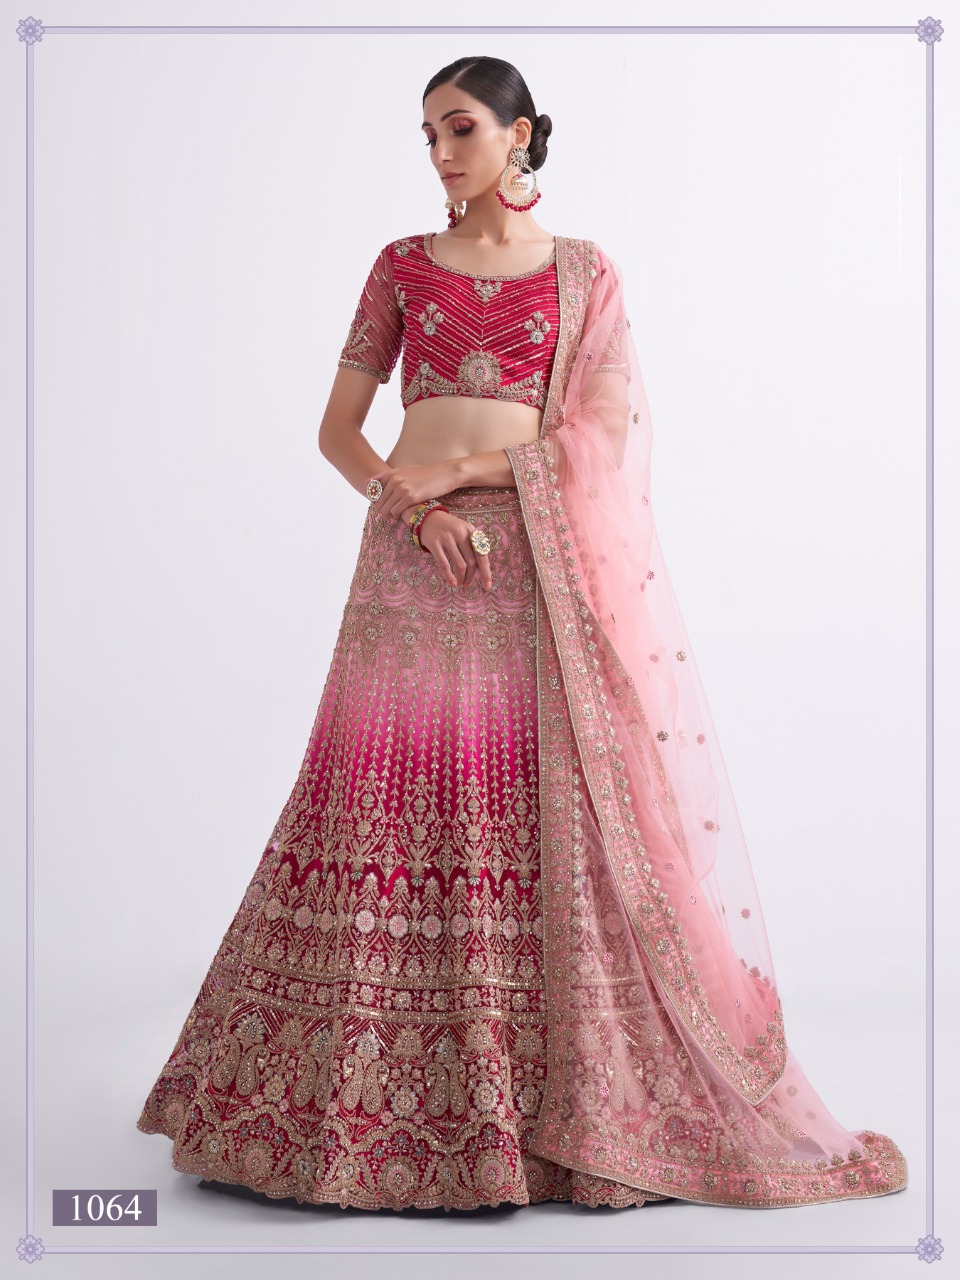 Pakistani Designer Party Wear New Wedding Indian Bollywood Bridal Lehenga  Choli | eBay